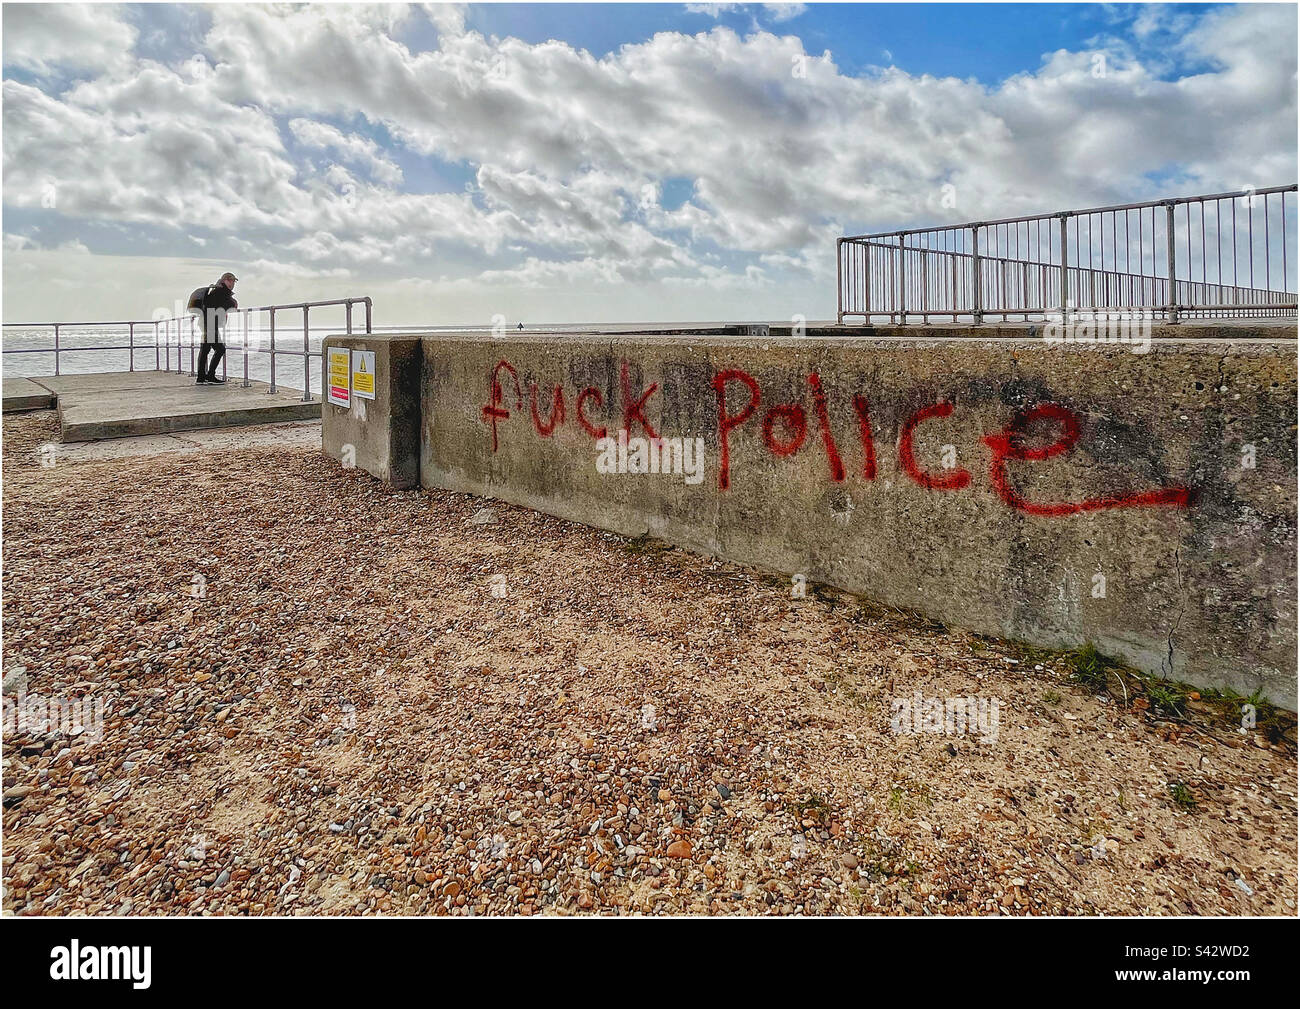 Antipolizeigefühle wurden an einer Wand am Felixstowe Strand gesprüht Stockfoto